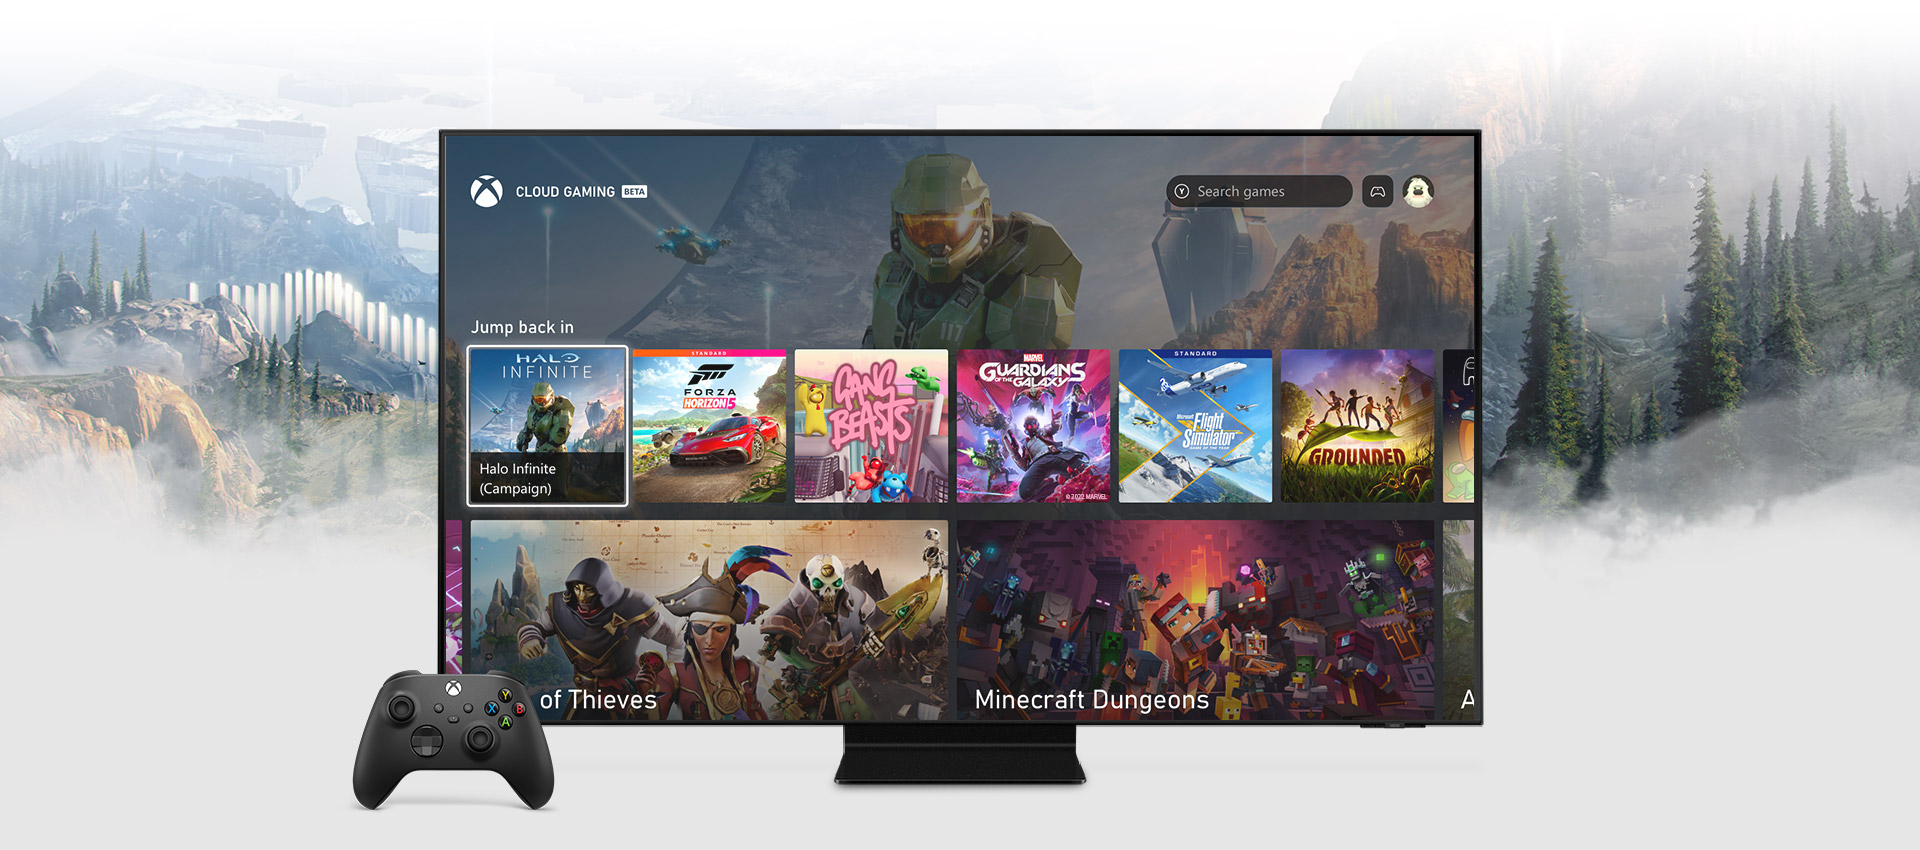 Startbildschirm der Xbox App auf einem Samsung Smart TV